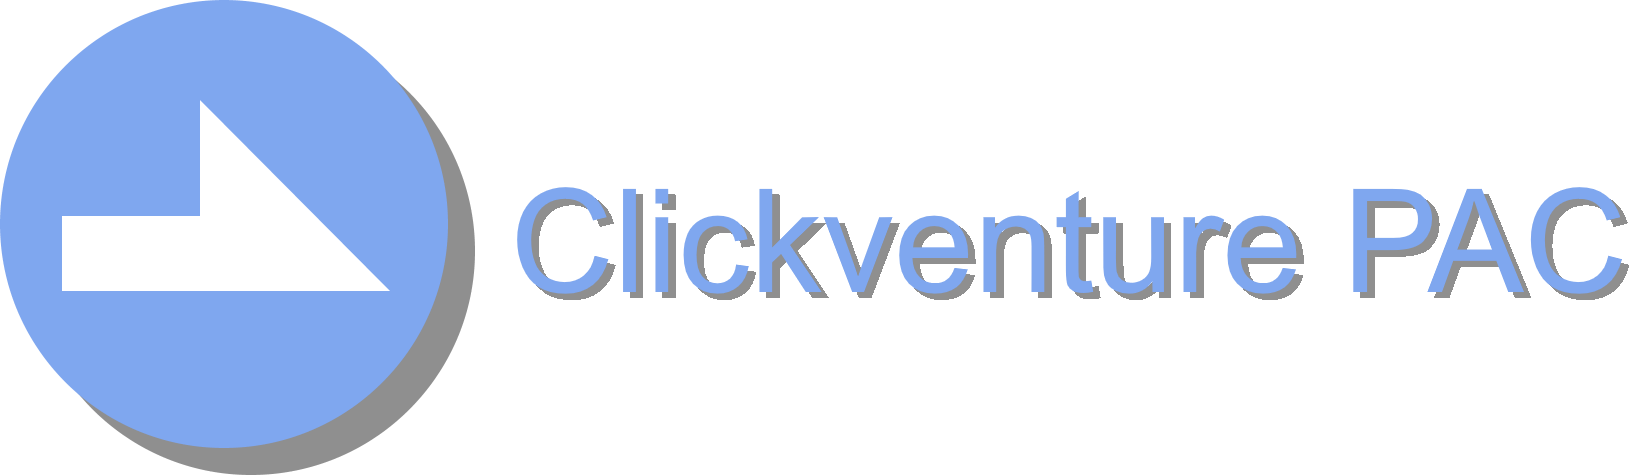 Clickventure PAC